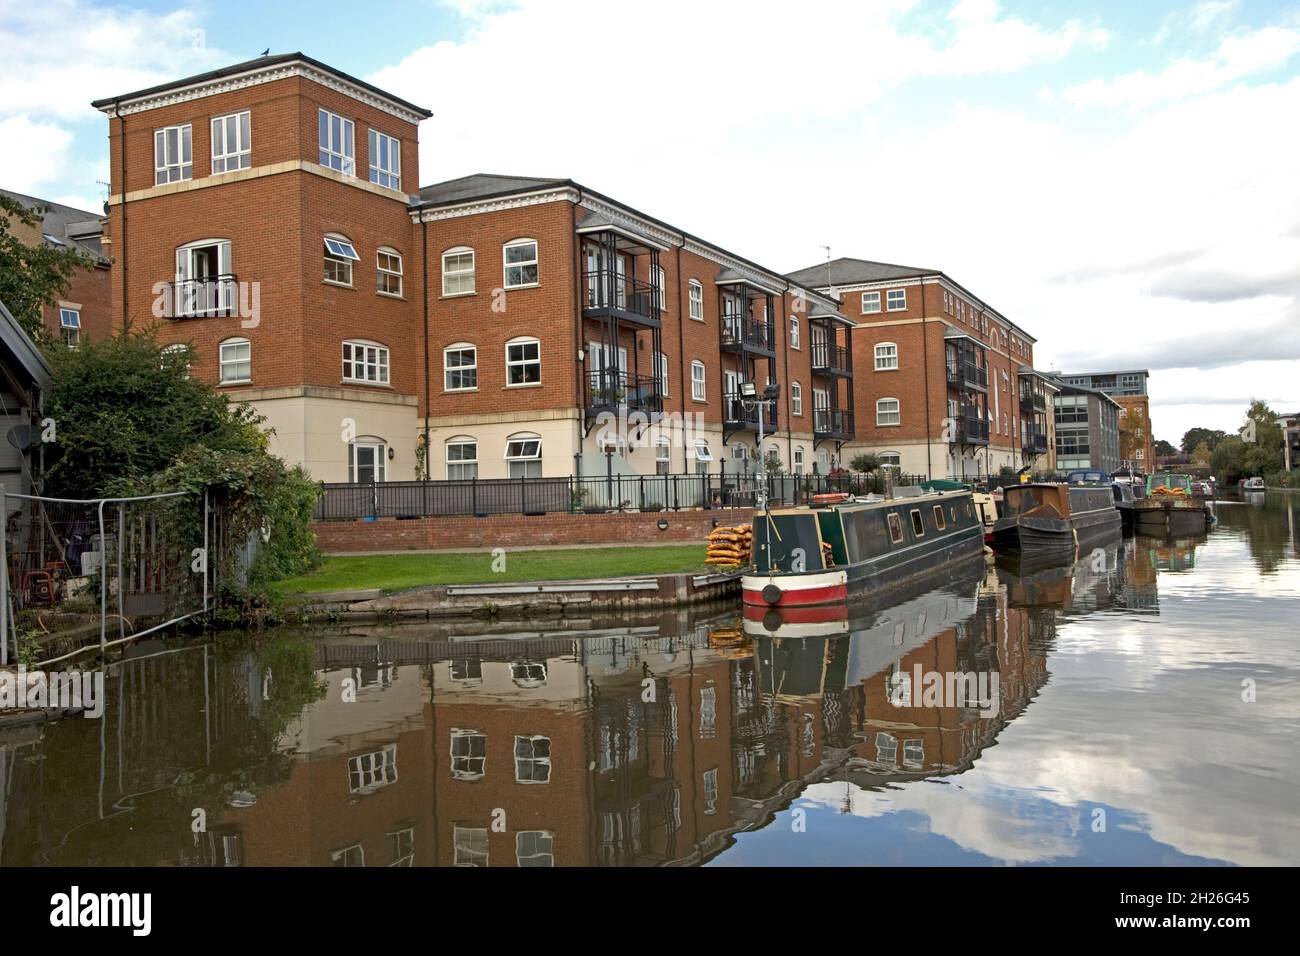 Waterside appartamenti e barche a remi ormeggiate a Diglis Basin a Worcester iwhere the Worcester & Birmingham. Il canale incontra il fiume Severn. REGNO UNITO Foto Stock